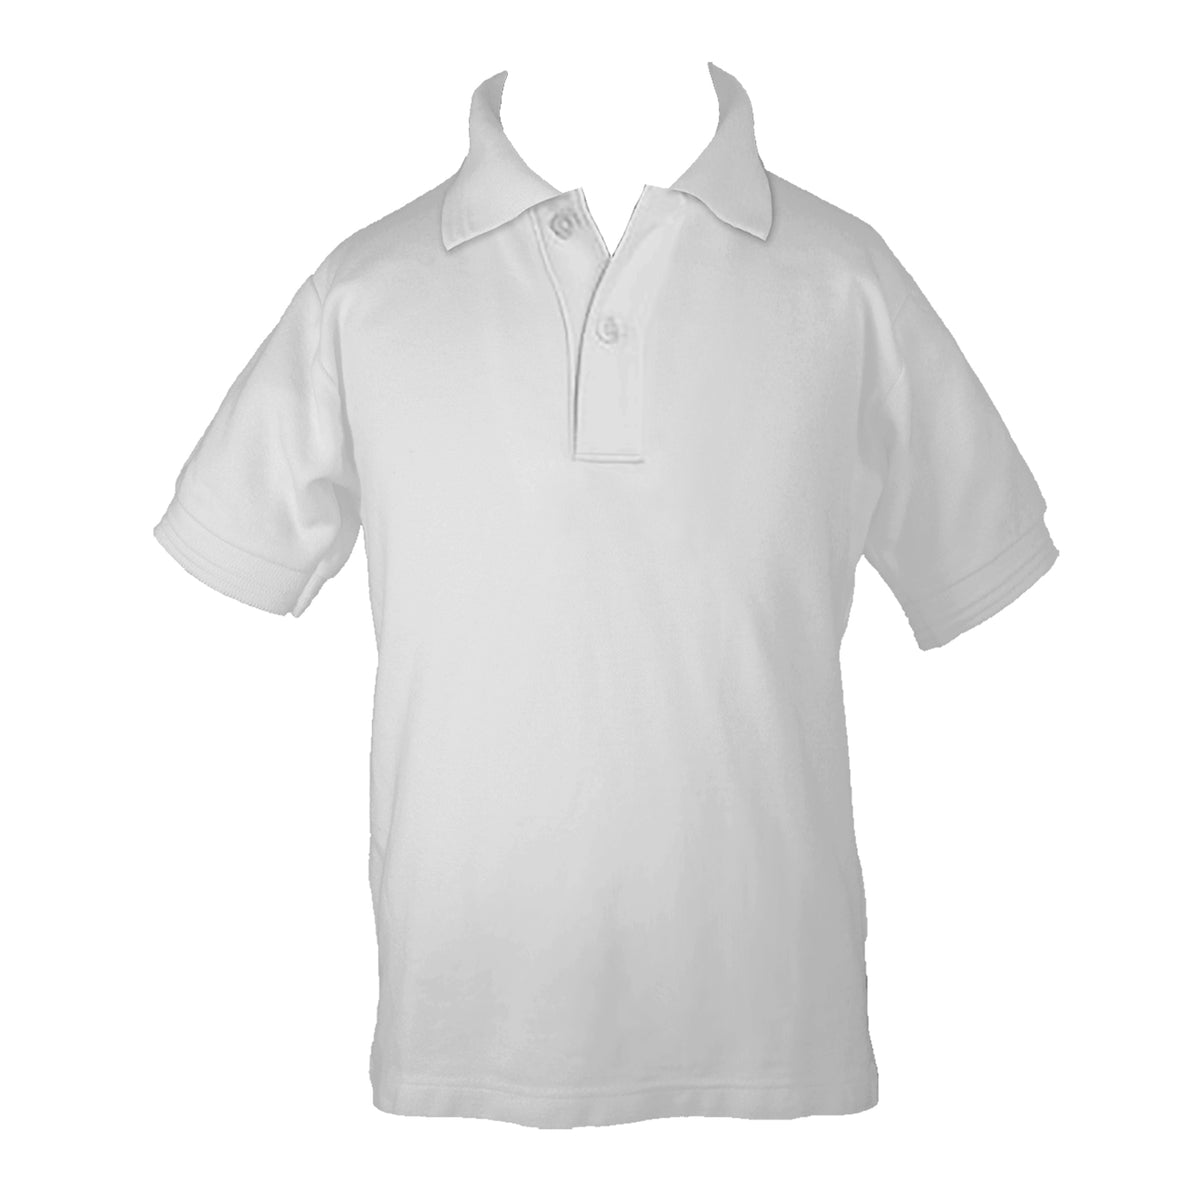 ZZZ TEST |  Golf Shirt Short Sleeve, Youth